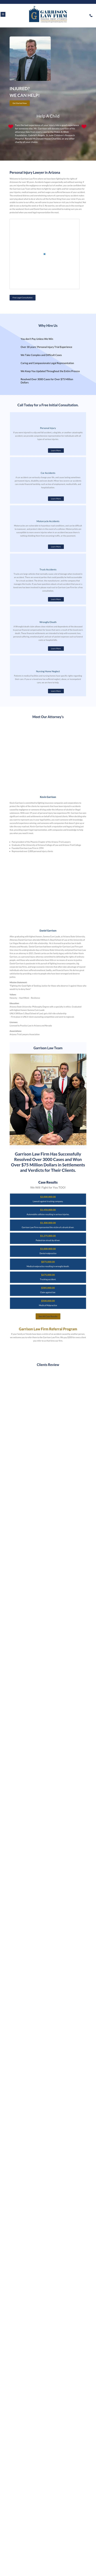 Garrison Law Firm - Peoria AZ Lawyers